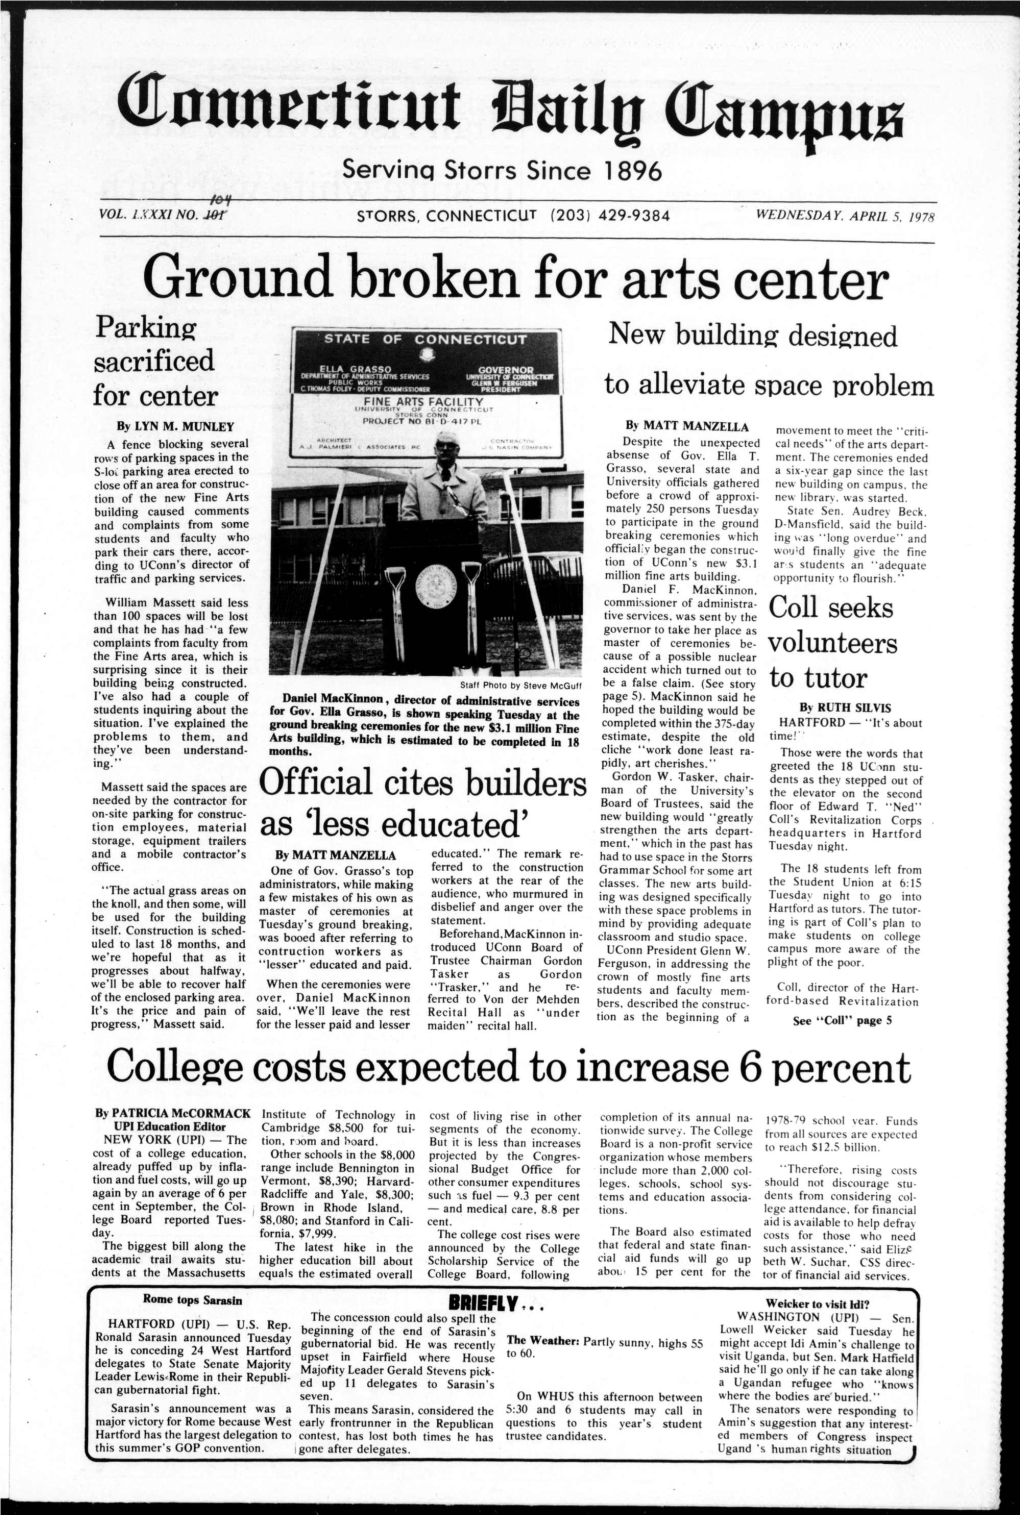 Ground Broken for Arts Center